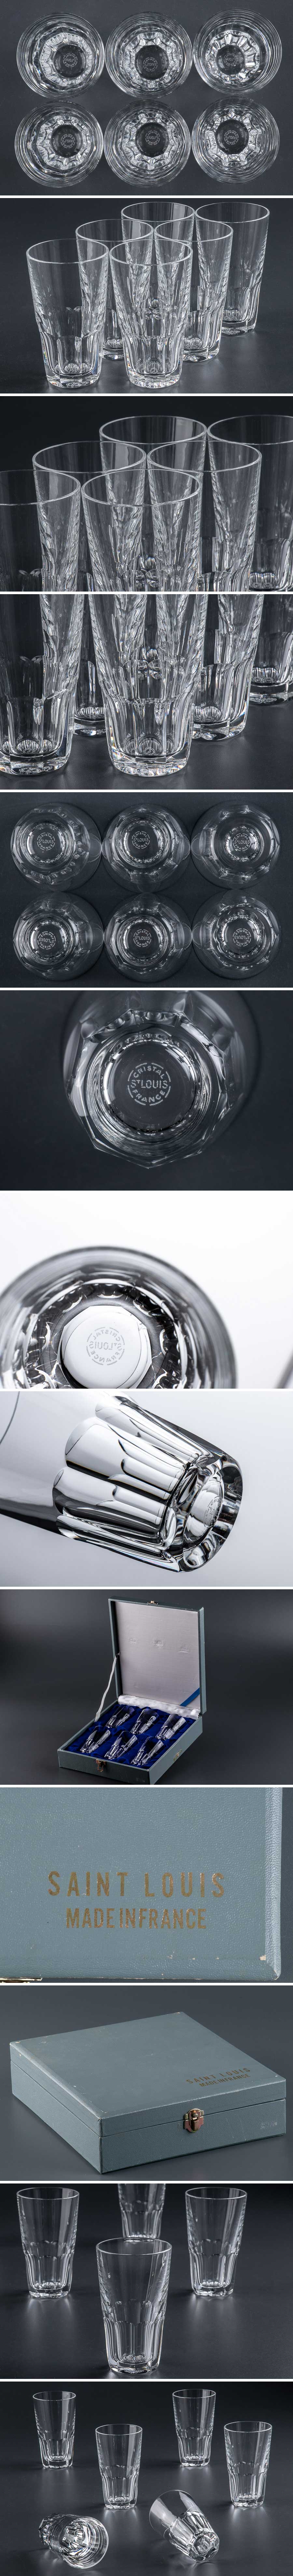 新価格版『 Saint-Louis サンルイ クリスタル カットガラス タンブラー グラス 6客 フランス 箱付 9357 』 洋食器 テーブルウェア ブランド クリスタルガラス